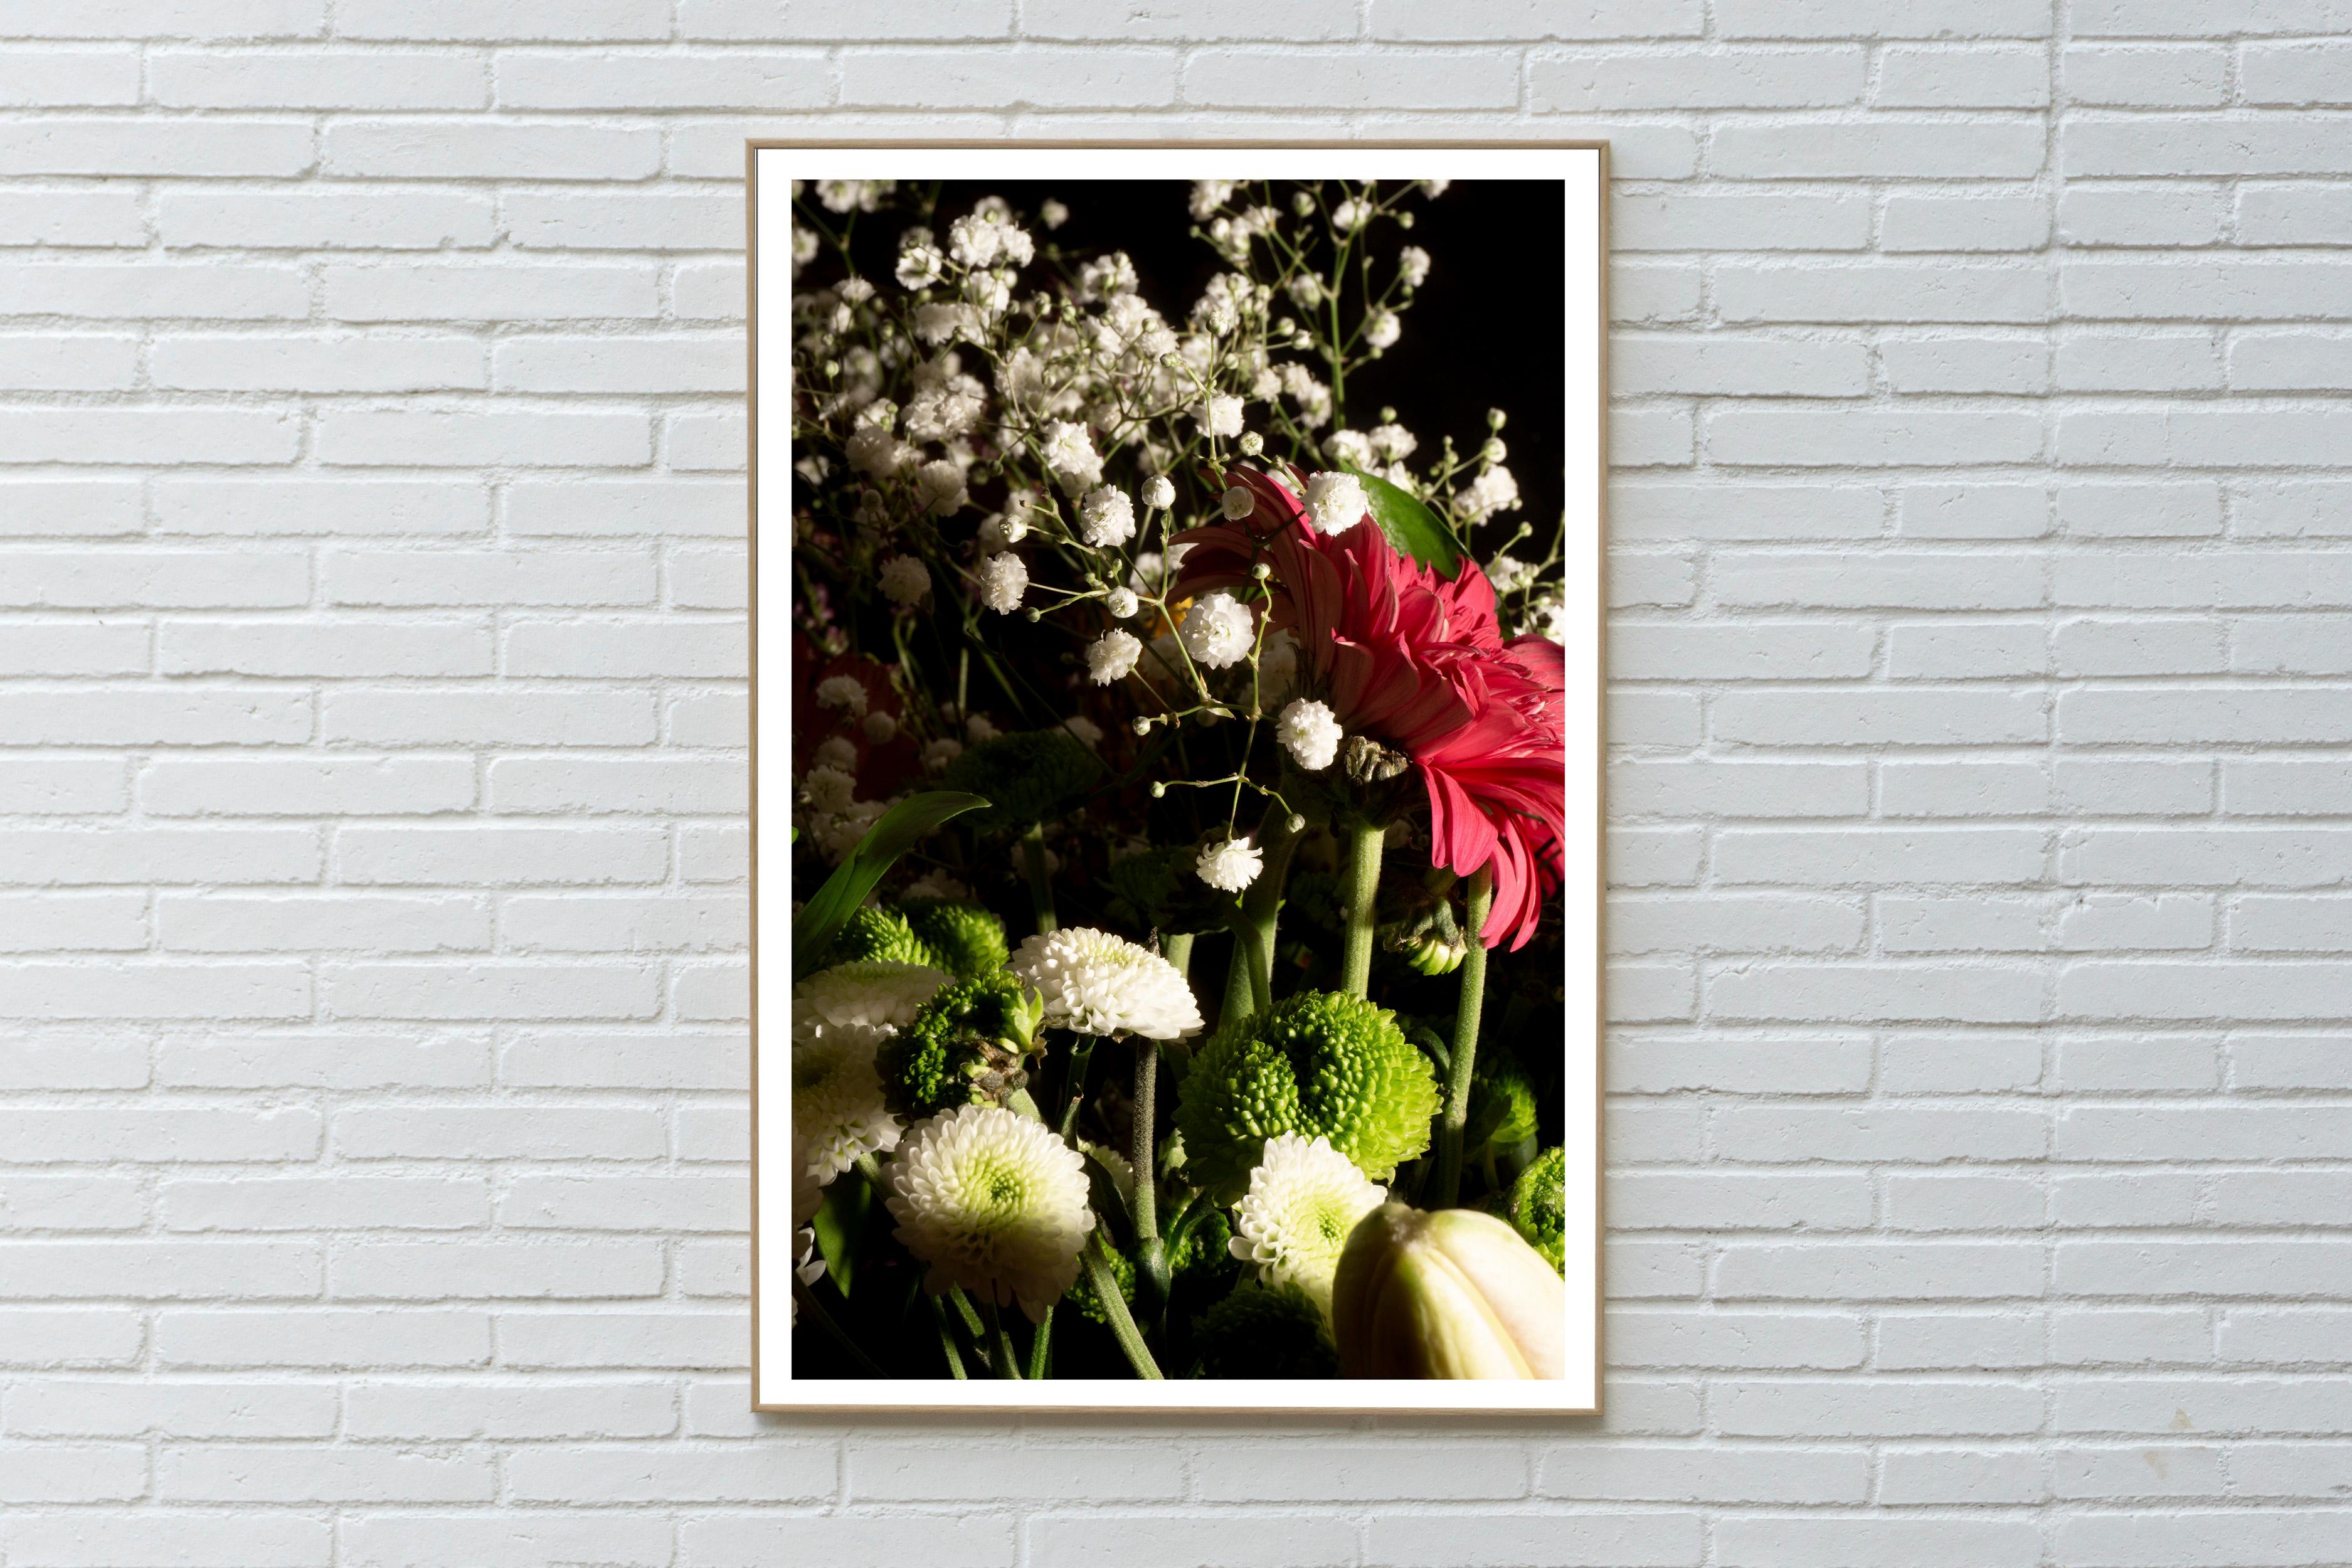 Mélange de bouquets de fleurs colorés, fleurs sauvages en gros plan, imprimé giclée, édition limitée - Photograph de Kind of Cyan